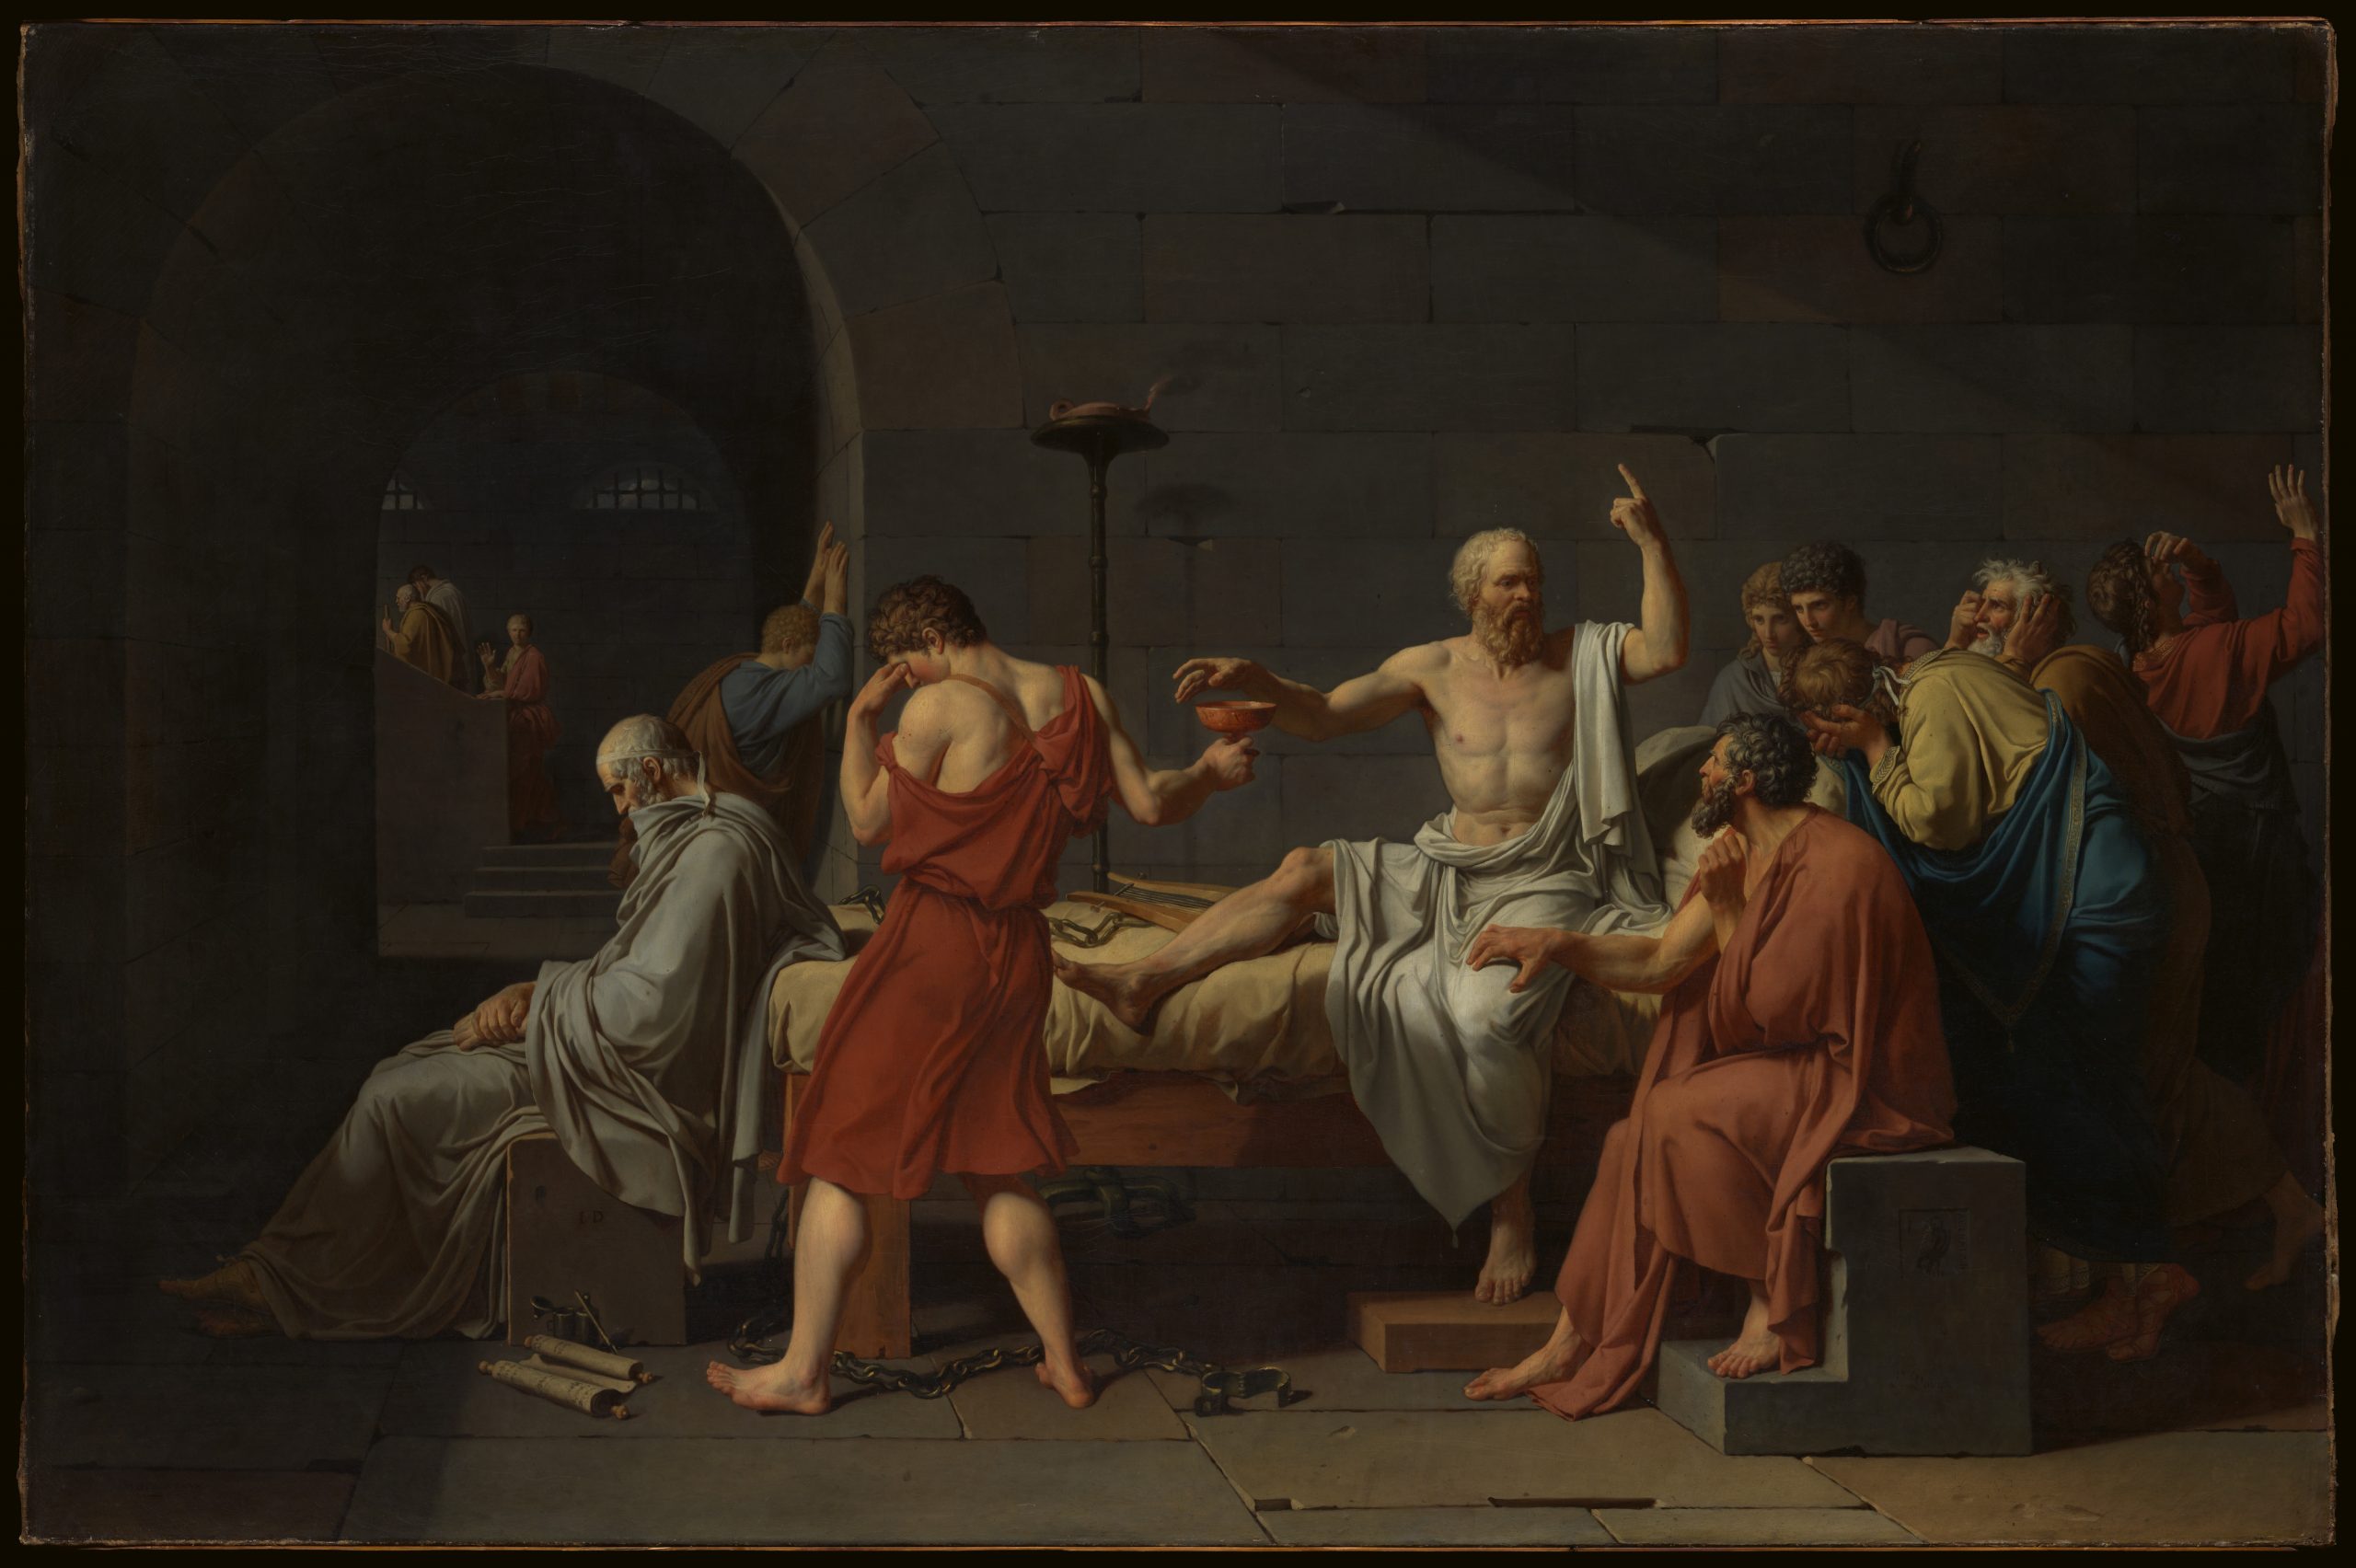 Enlightenment of Socrates’ Last Words